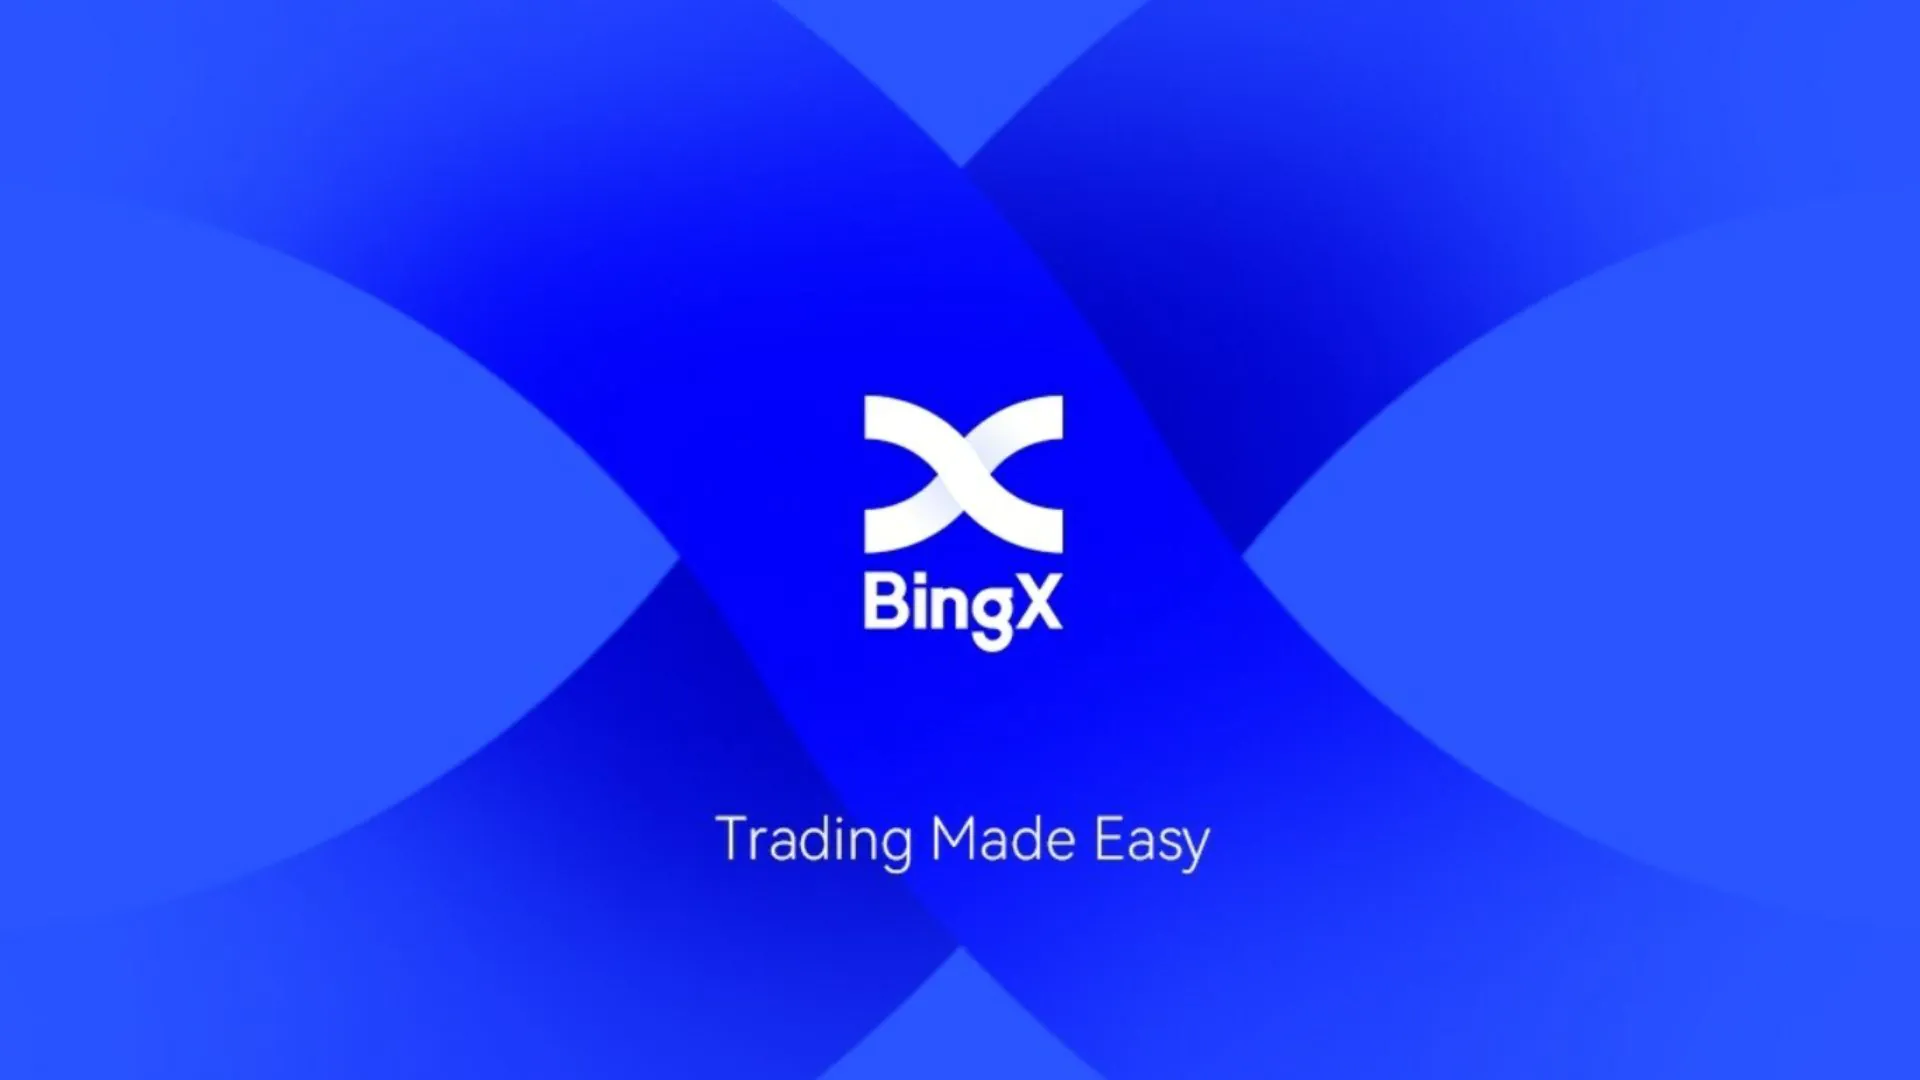 Sàn BingX là gì?